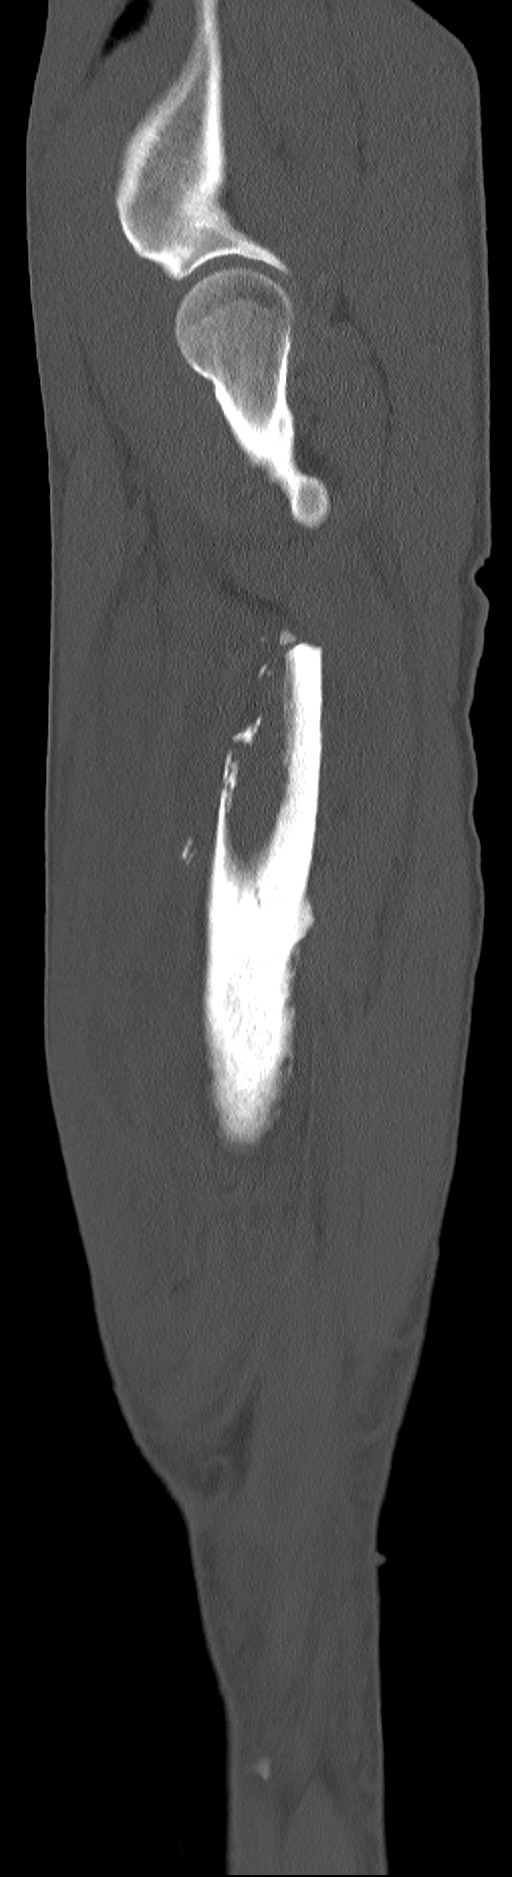 Chronic osteomyelitis (with sequestrum) (Radiopaedia 74813-85822 C 89).jpg